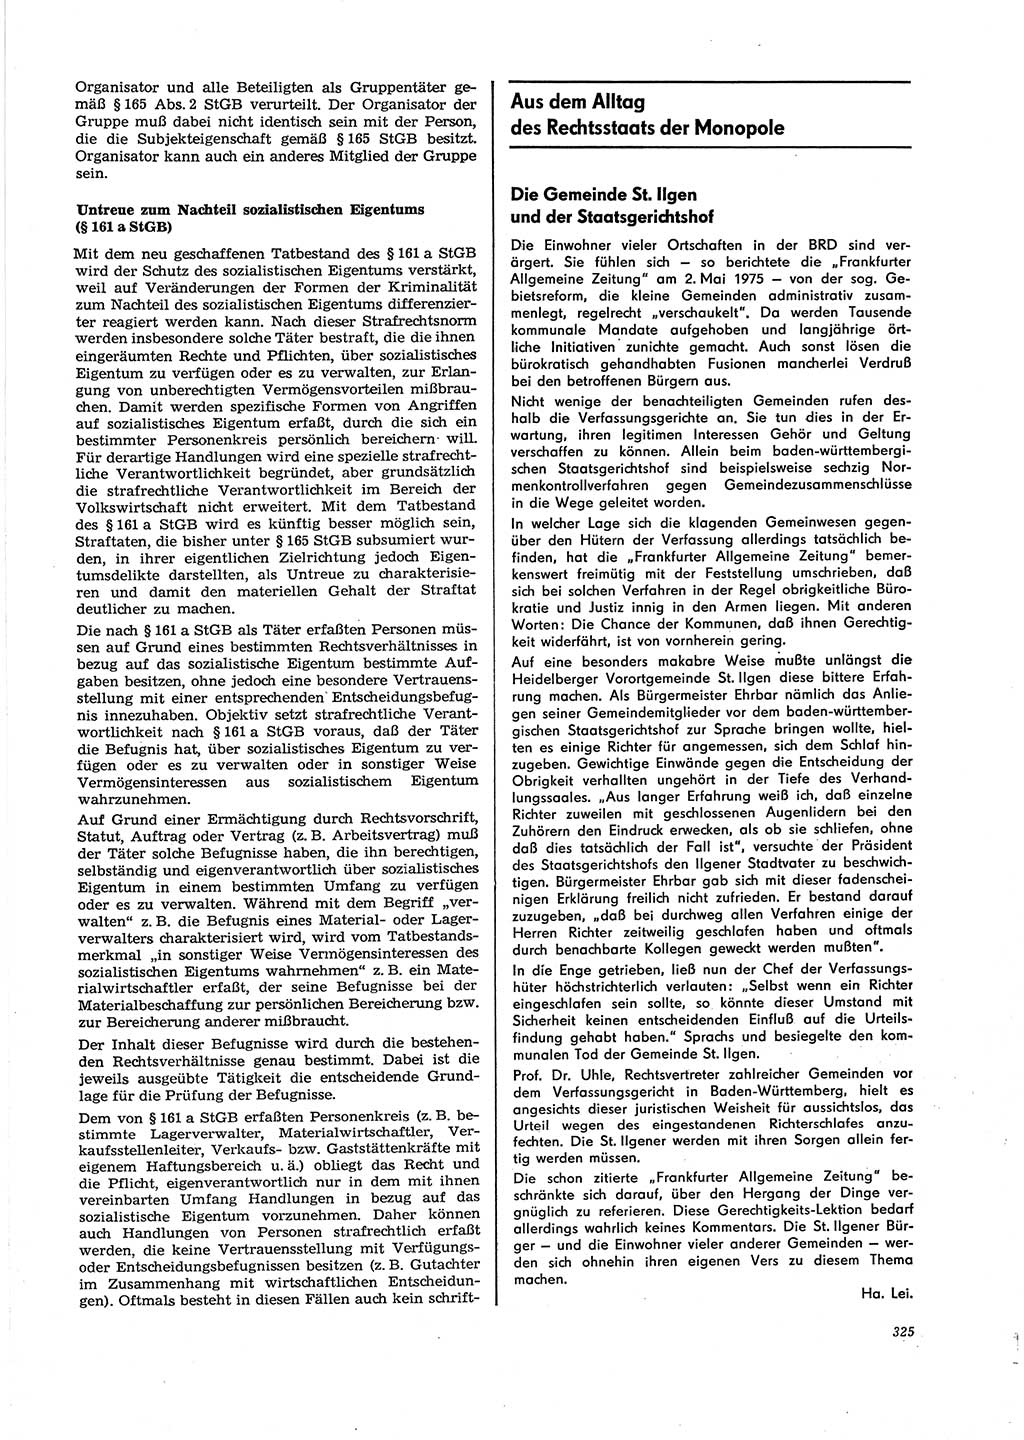 Neue Justiz (NJ), Zeitschrift für Recht und Rechtswissenschaft [Deutsche Demokratische Republik (DDR)], 29. Jahrgang 1975, Seite 325 (NJ DDR 1975, S. 325)